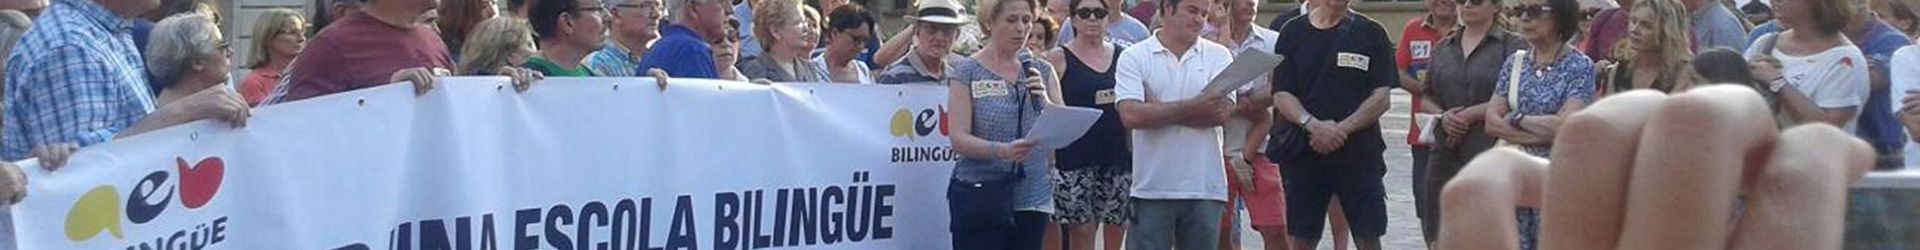 Promovemos y difundimos las ventajas del bilingüismo y del trilingüismo en la sociedad